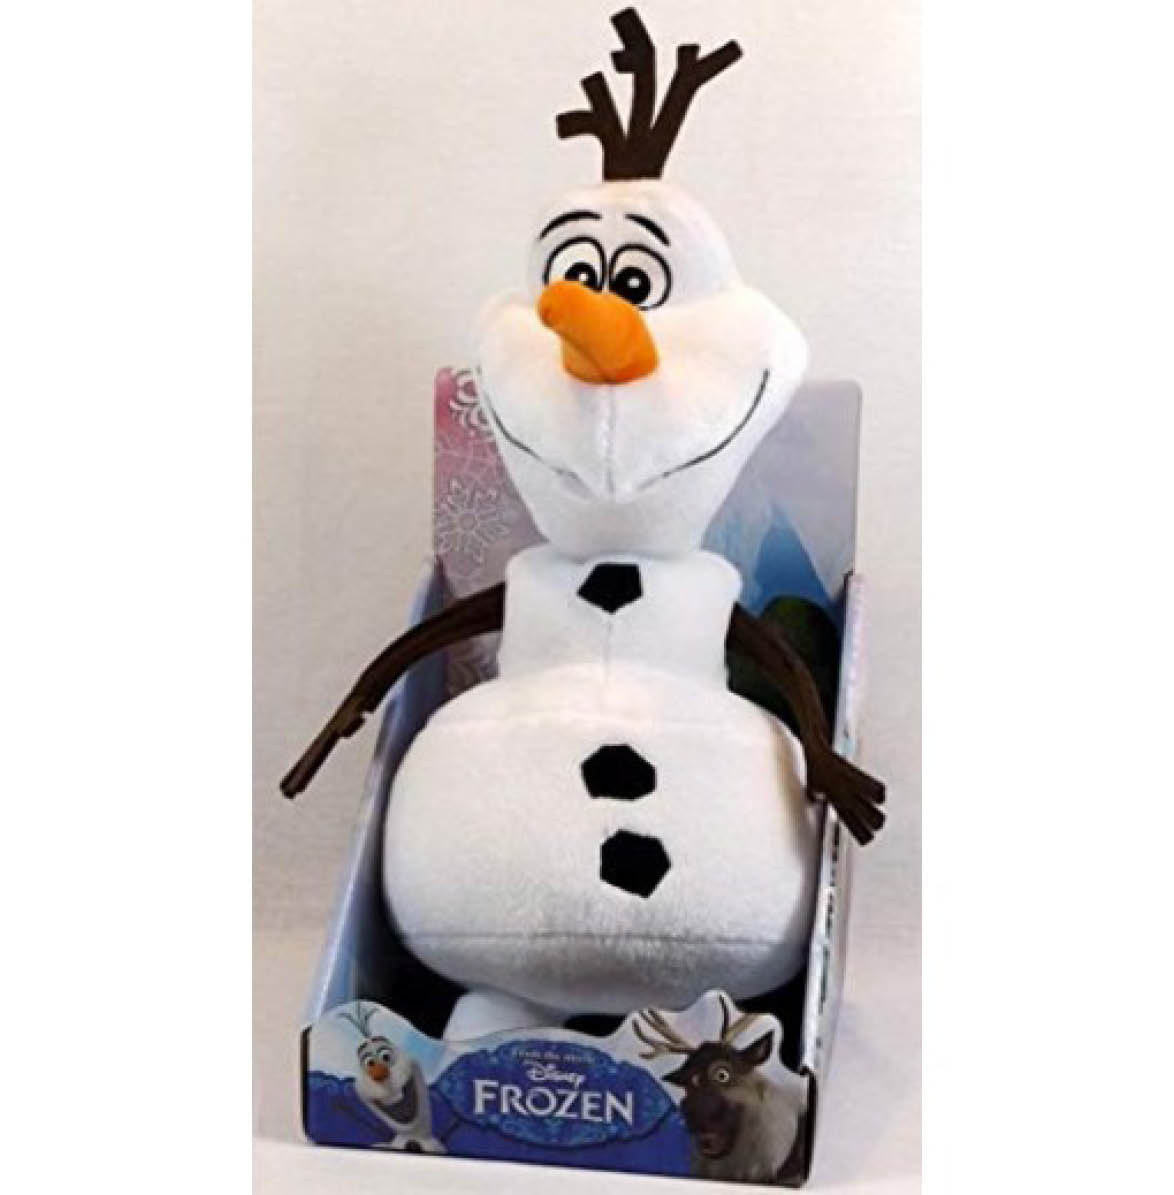 Disney Frozen Olaf Plush Doll